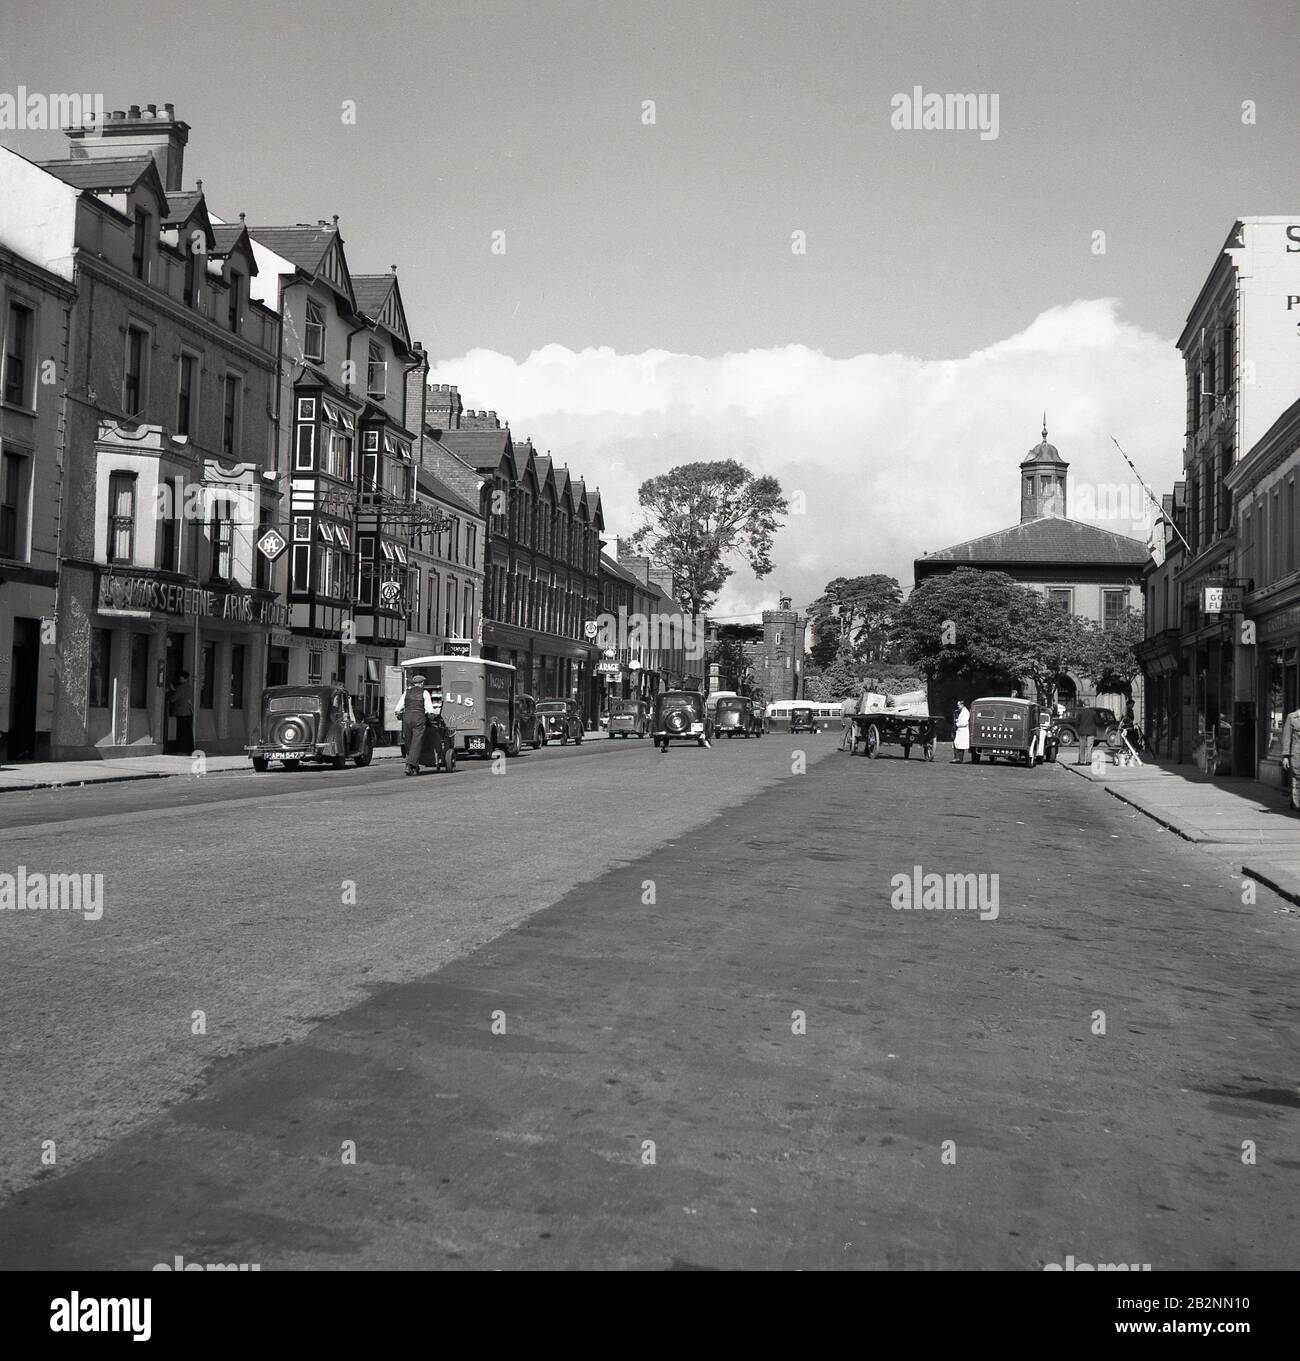 Années 1950, vue historique d'une grande rue à Antrim, en Irlande du Nord, montrant le Massereene Arms Hotel, les véhicules à moteur de la journée, le chariot à main et les fourgonnettes de livraison pour la boulangerie Ormeau (à droite) et la société Inglis Biscuit (à gauche) Banque D'Images